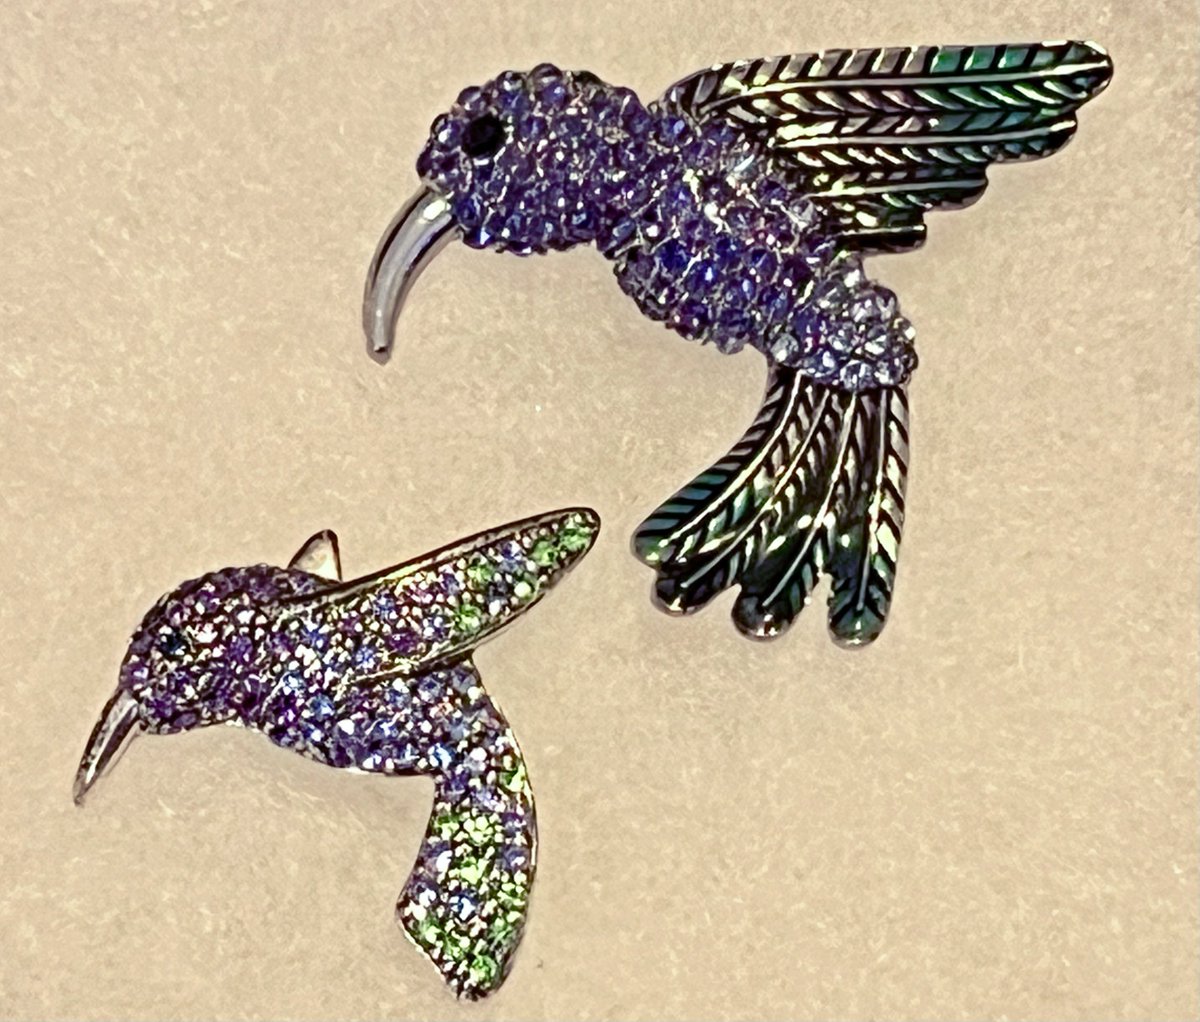 GLITZY #VINTAGE Hummingbird #Rhinestone Brooch LOT of 2 #Designer #Monet & #AnneKlein FREE SHIP

#giftsformom #mothersdaygifts #springfashion #summerstyle #hummingbirds #birds #brooches #birdlovers #birdwatchers #giftsforher #ebayfinds #brooch #lapelpins 

ebay.com/itm/2667796956…